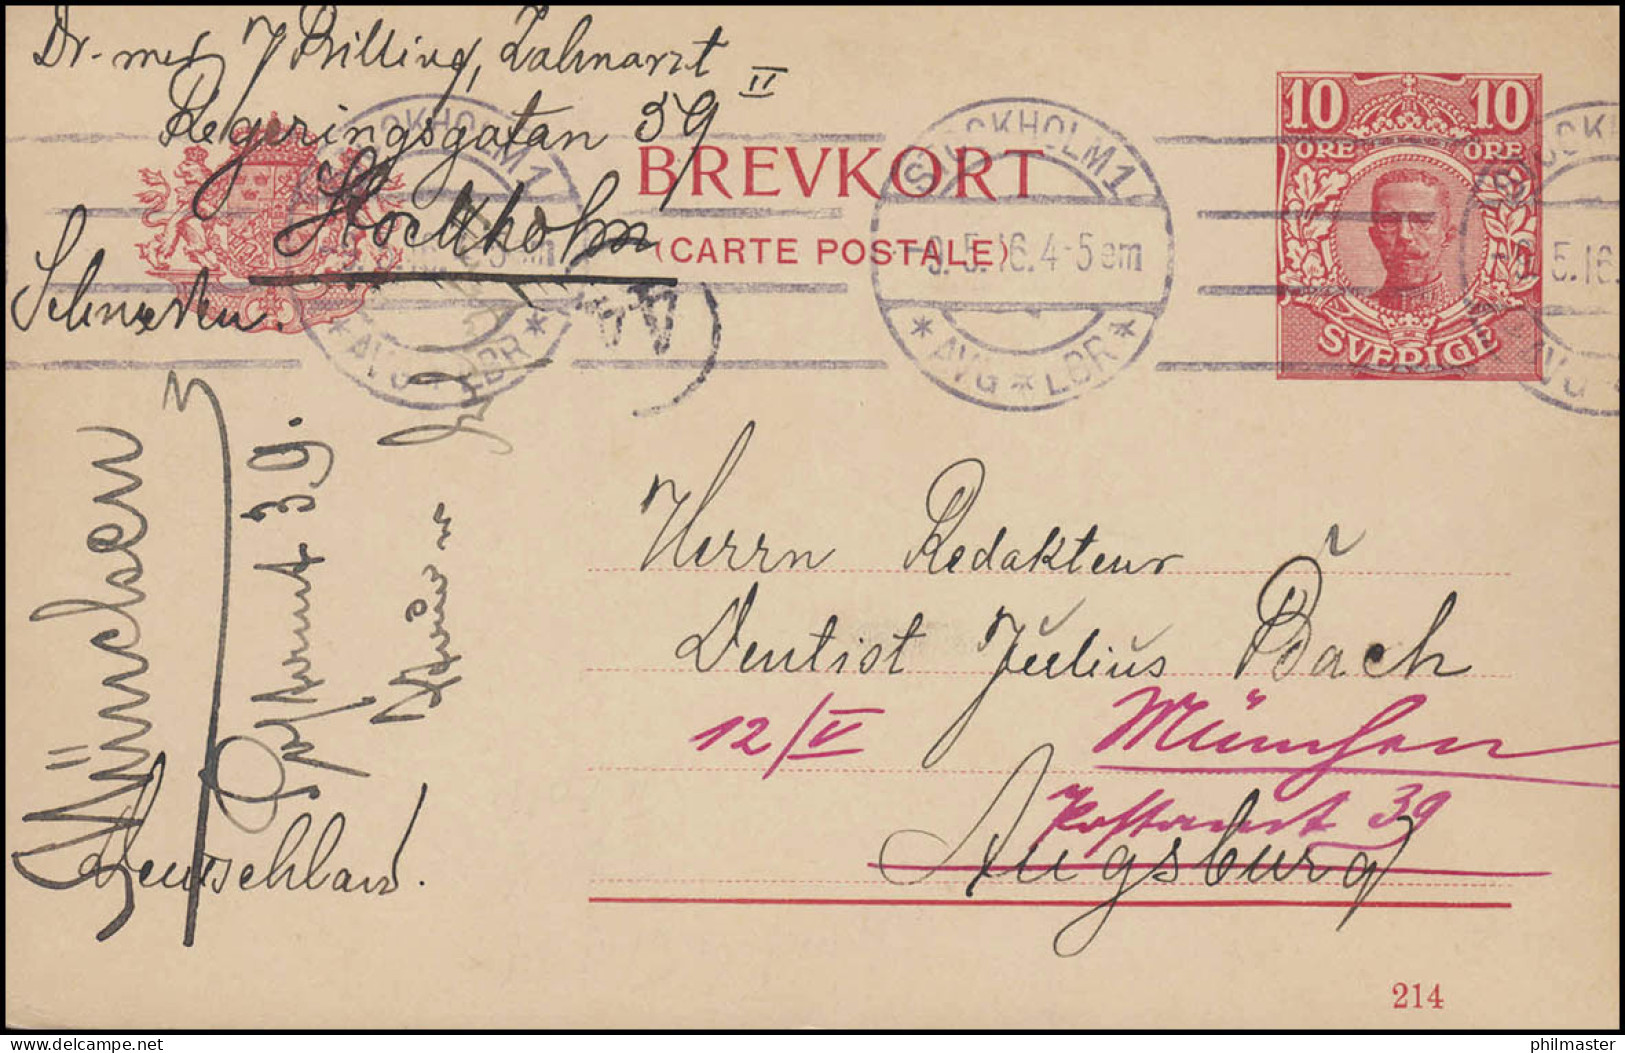 Postkarte P 30 BREFKORT König Gustav Mit DV 214, STOCKHOLM 9.5.16 Nach Augsburg - Postwaardestukken